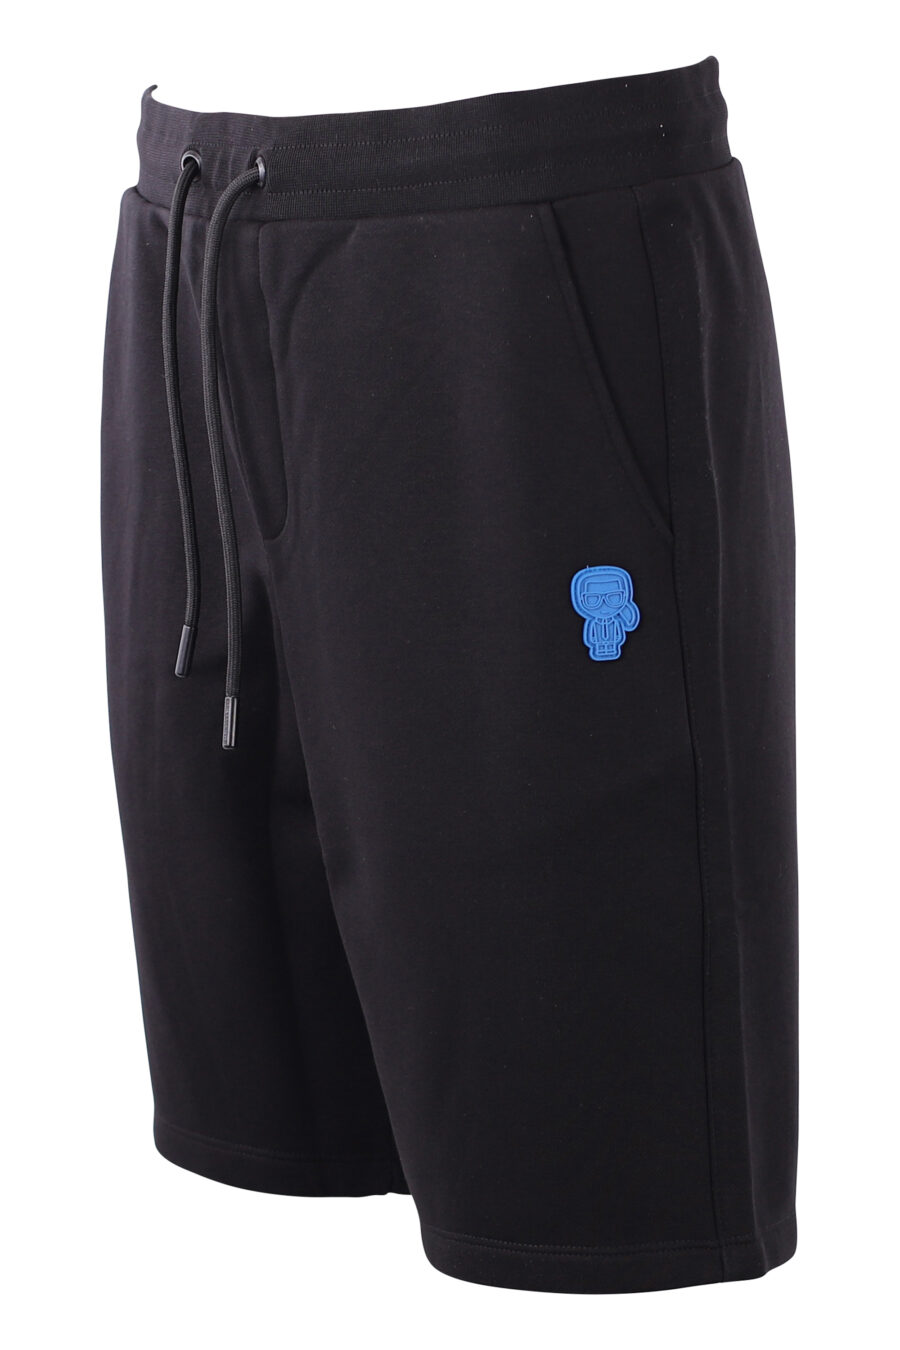 Pantalón corto de chandal negro con logo azul - IMG 8584